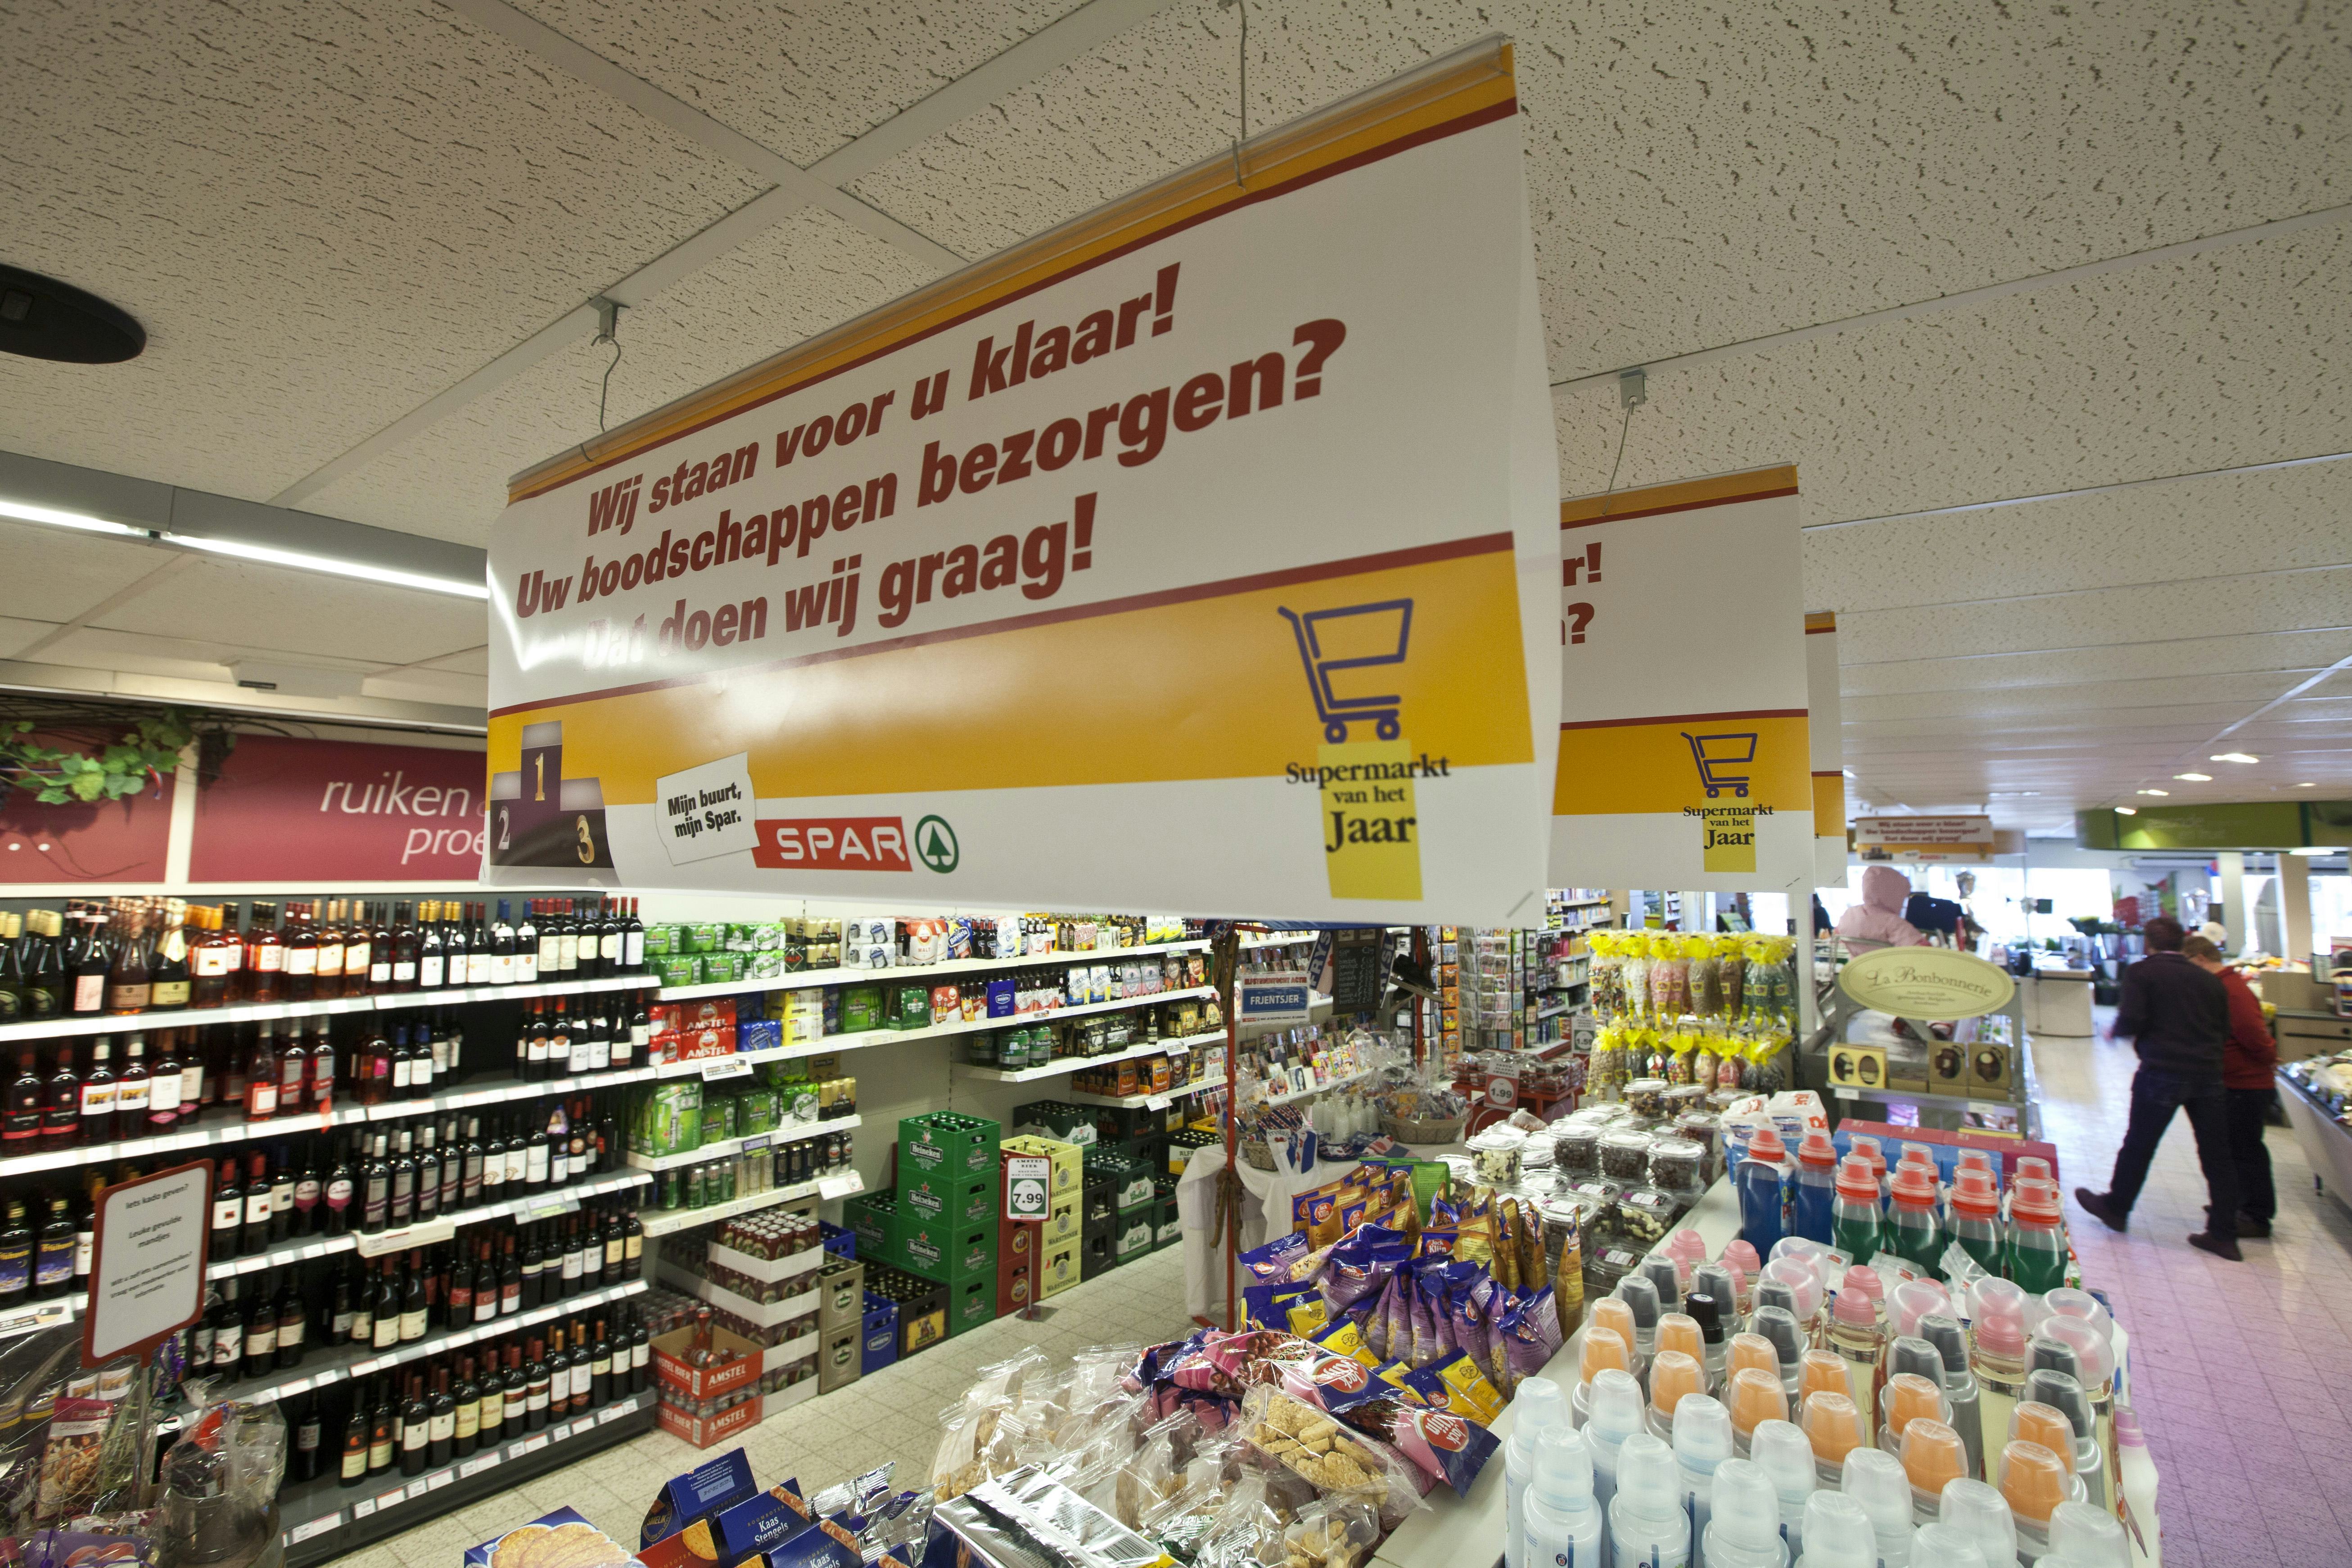 Spar Boonstra in Dokkum. finalist voor de Buurtsupermarkt van het Jaar 2012 - verkiezing. plafondhanger, poster met tekst: wij staan voor u klaar. uw boodschappen bezorgen doen wij graag